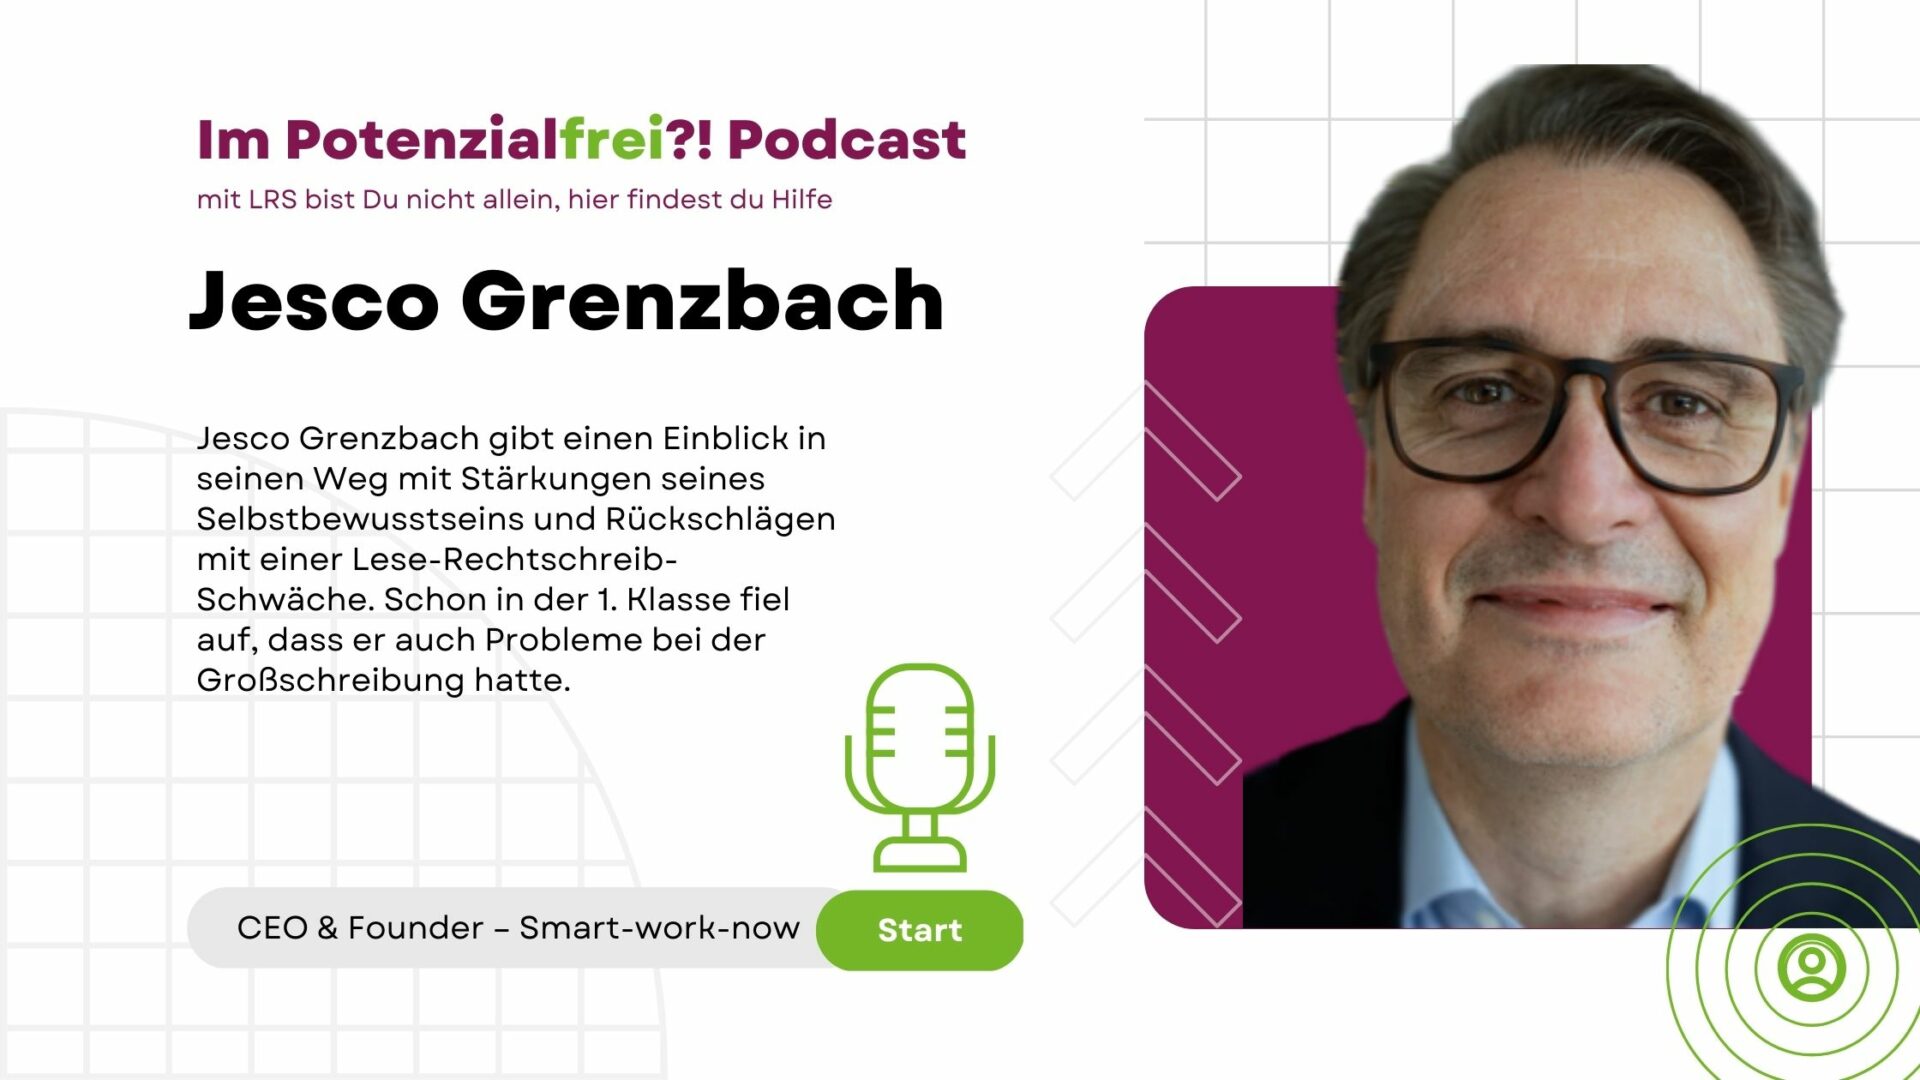 Jesco Grenzbach CEO & Founder Smart-work-now, im Potenzialfrei Podcast